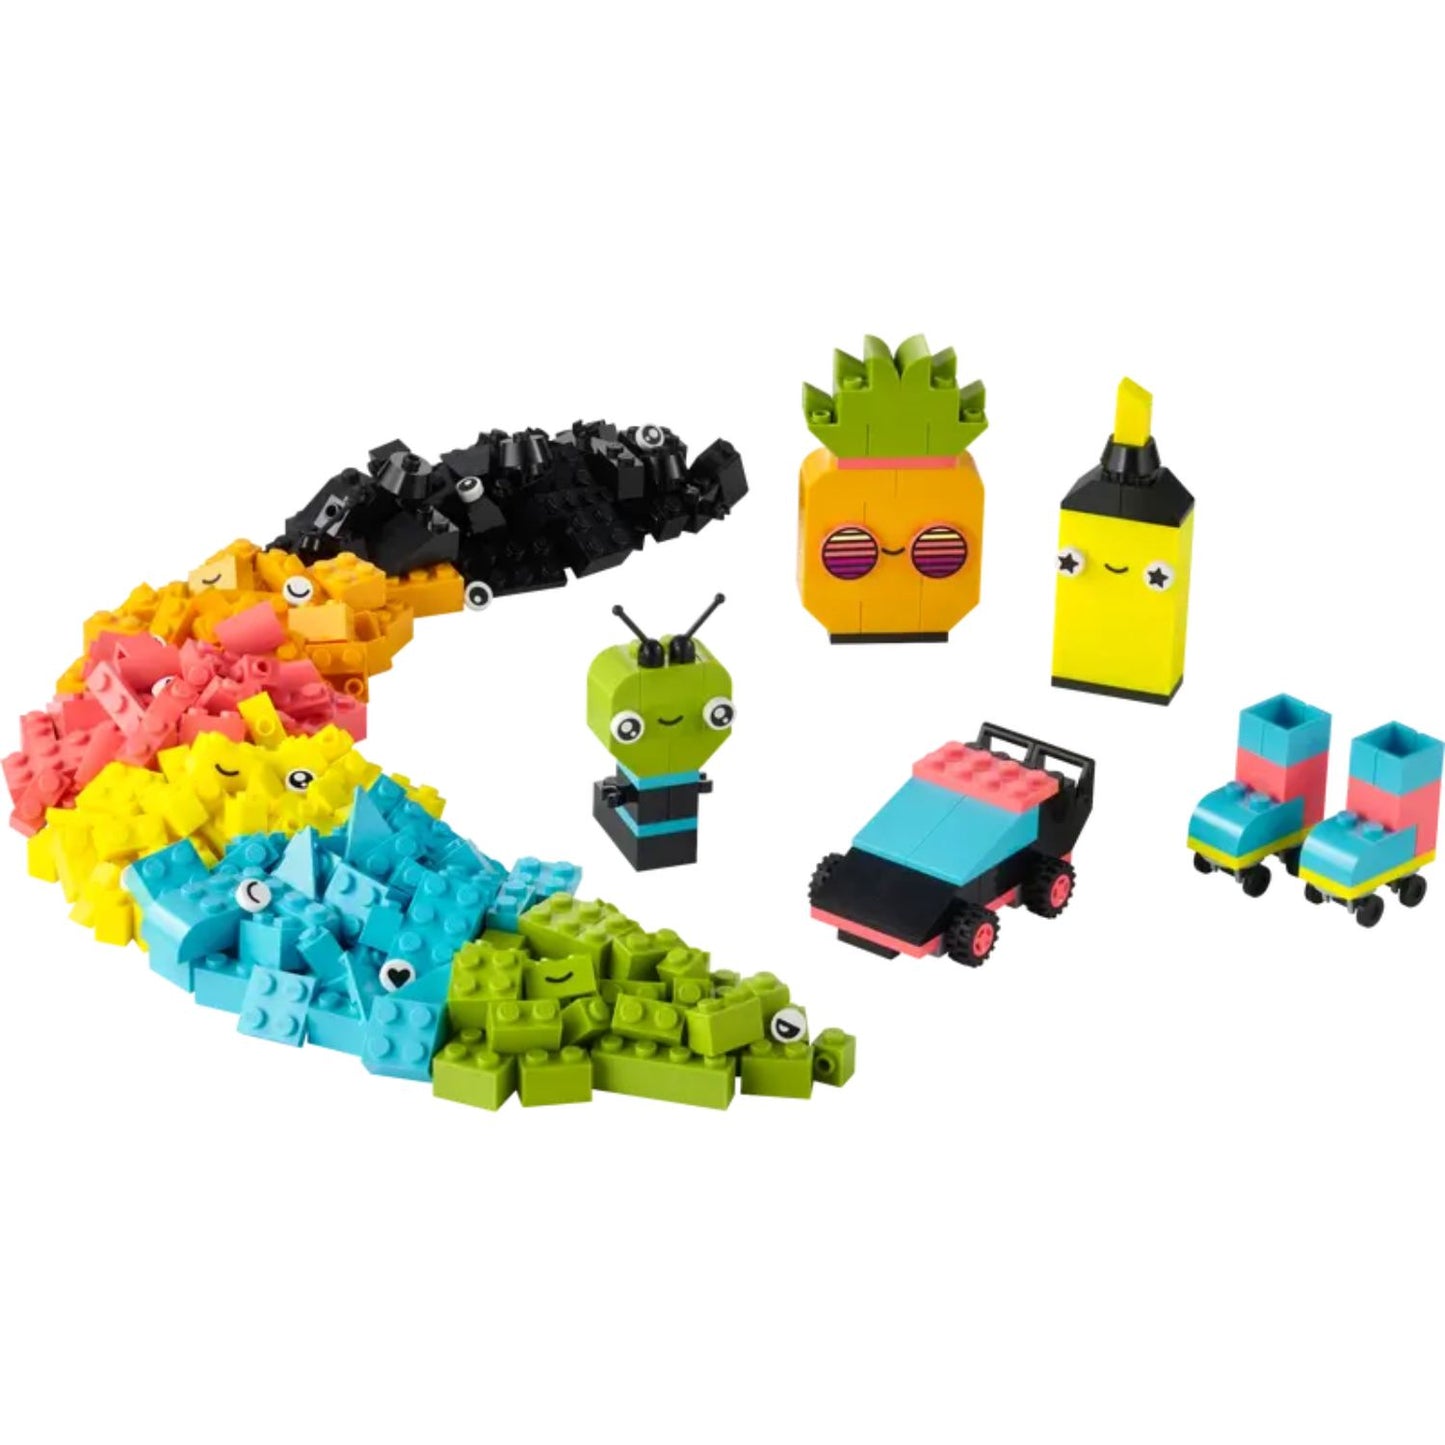 LEGO Classic - Divertimento creativo Neon 11027